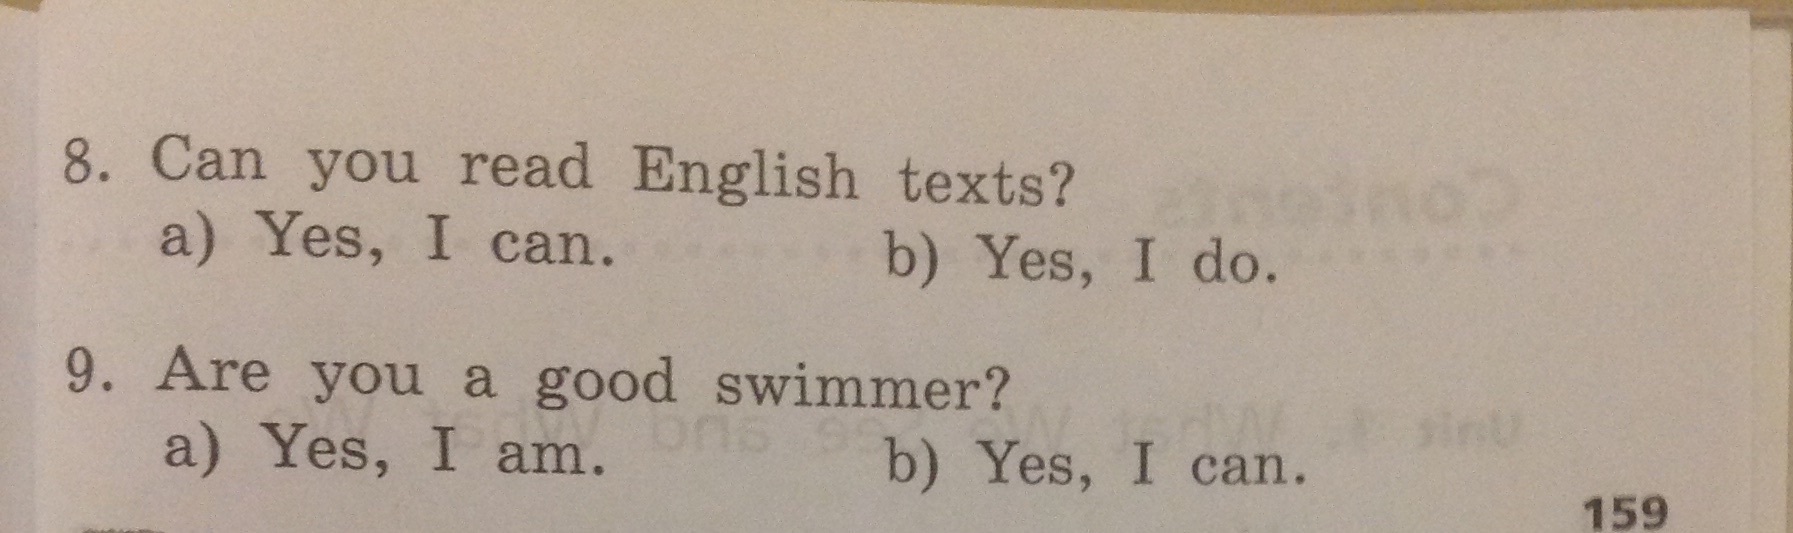 Английский язык 3 класс выбери правильный ответ. Обведи правильный ответ. Обведи правильный ответ английский. Английский язык 2 класс обведи правильный ответ. Выбери правильный ответ английский язык 2 класс.